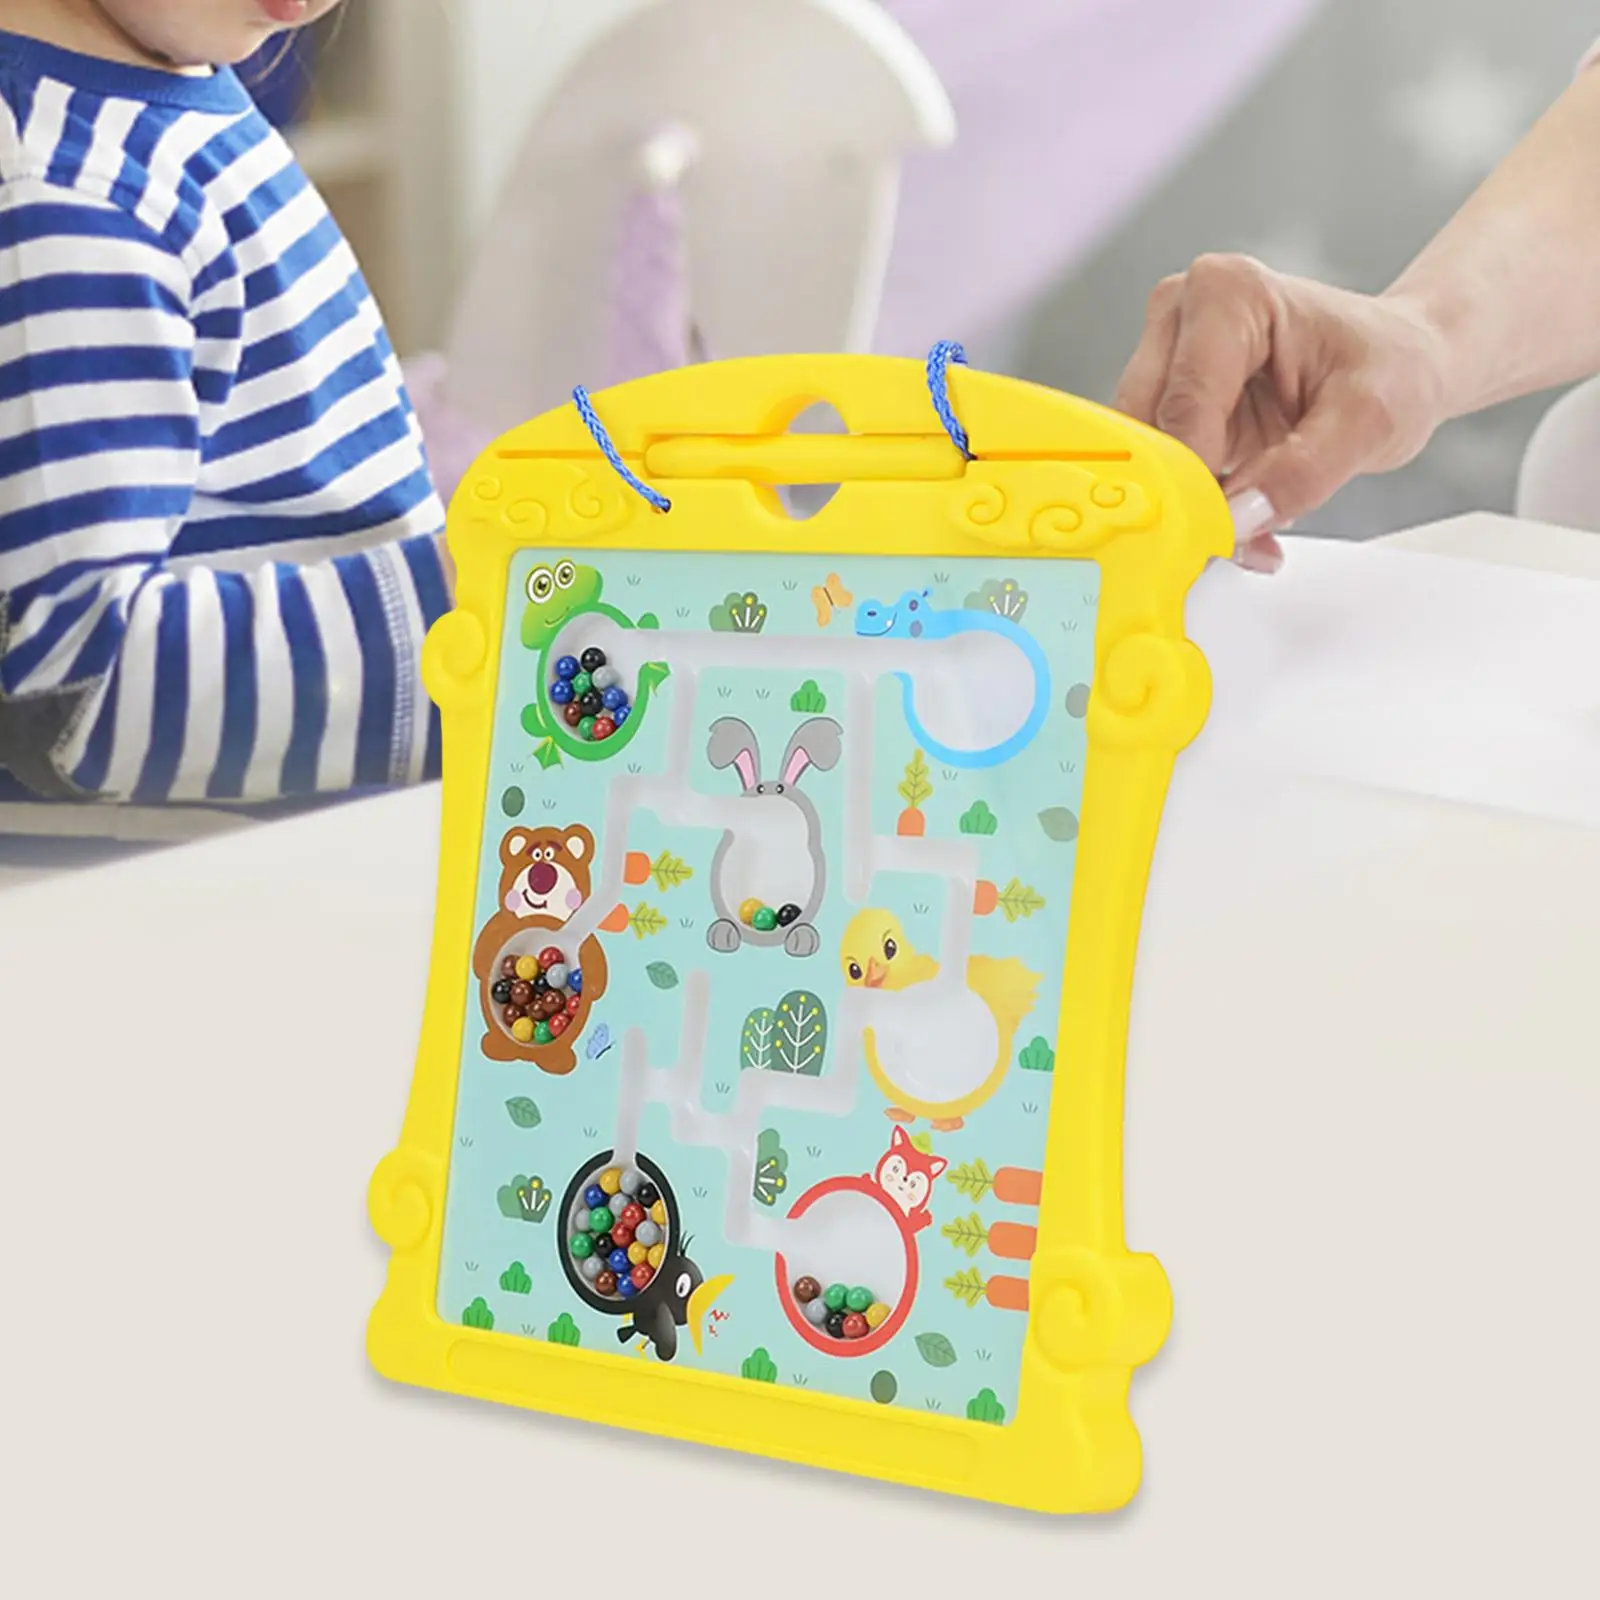 

Магнитный Лабиринт для сортировки цветов, обучающий материал, развивающая игрушка Монтессори, обучающая игрушка для детей и детского сада